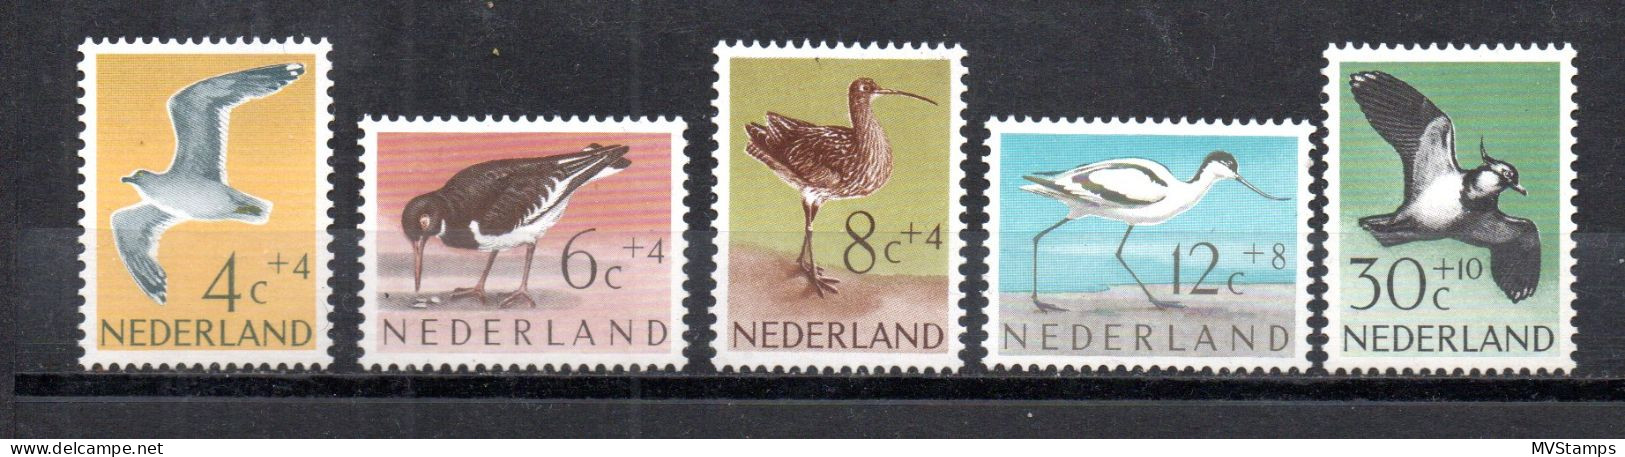 Netherlands 1961 Set Birds/Vogel Stamps (Michel 760/64) MNH - Neufs